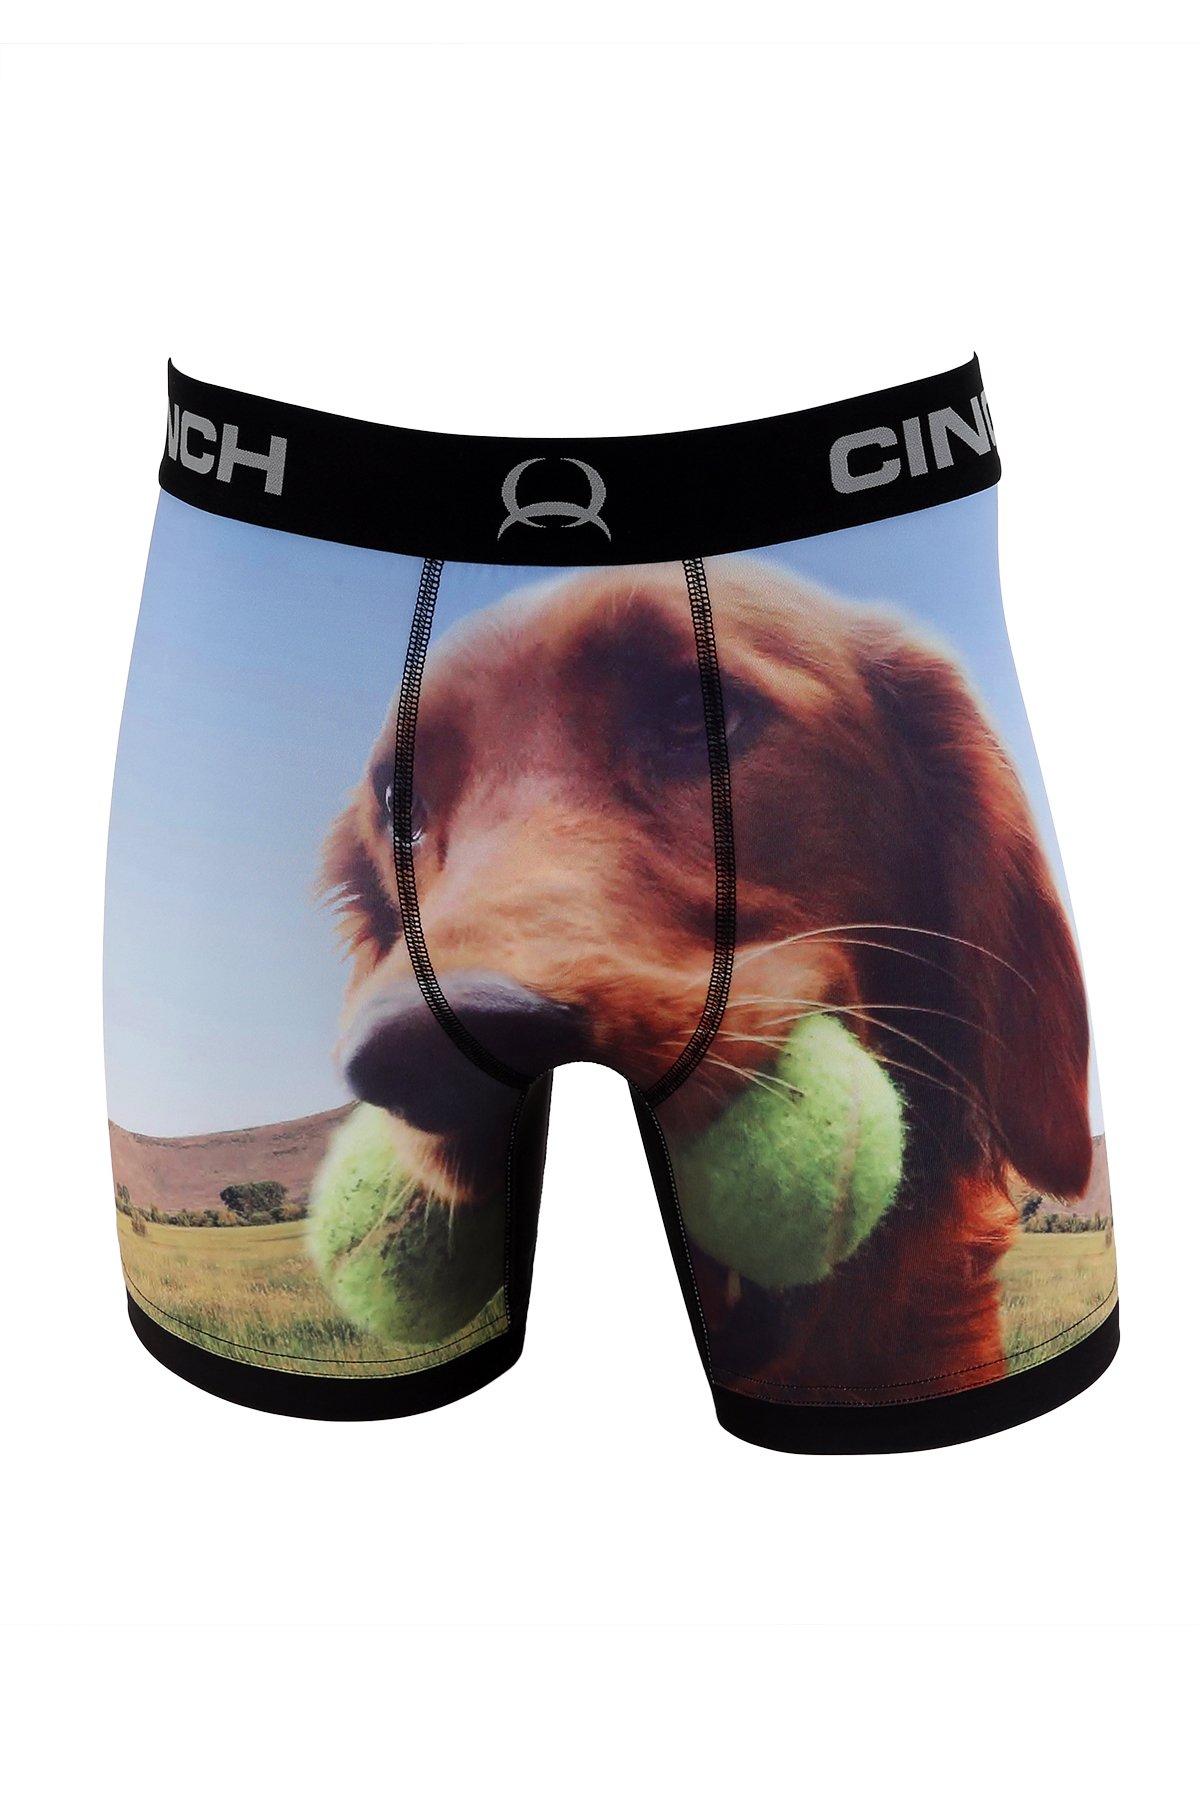 Cinch 6 Performance Boxer Brief Underwear